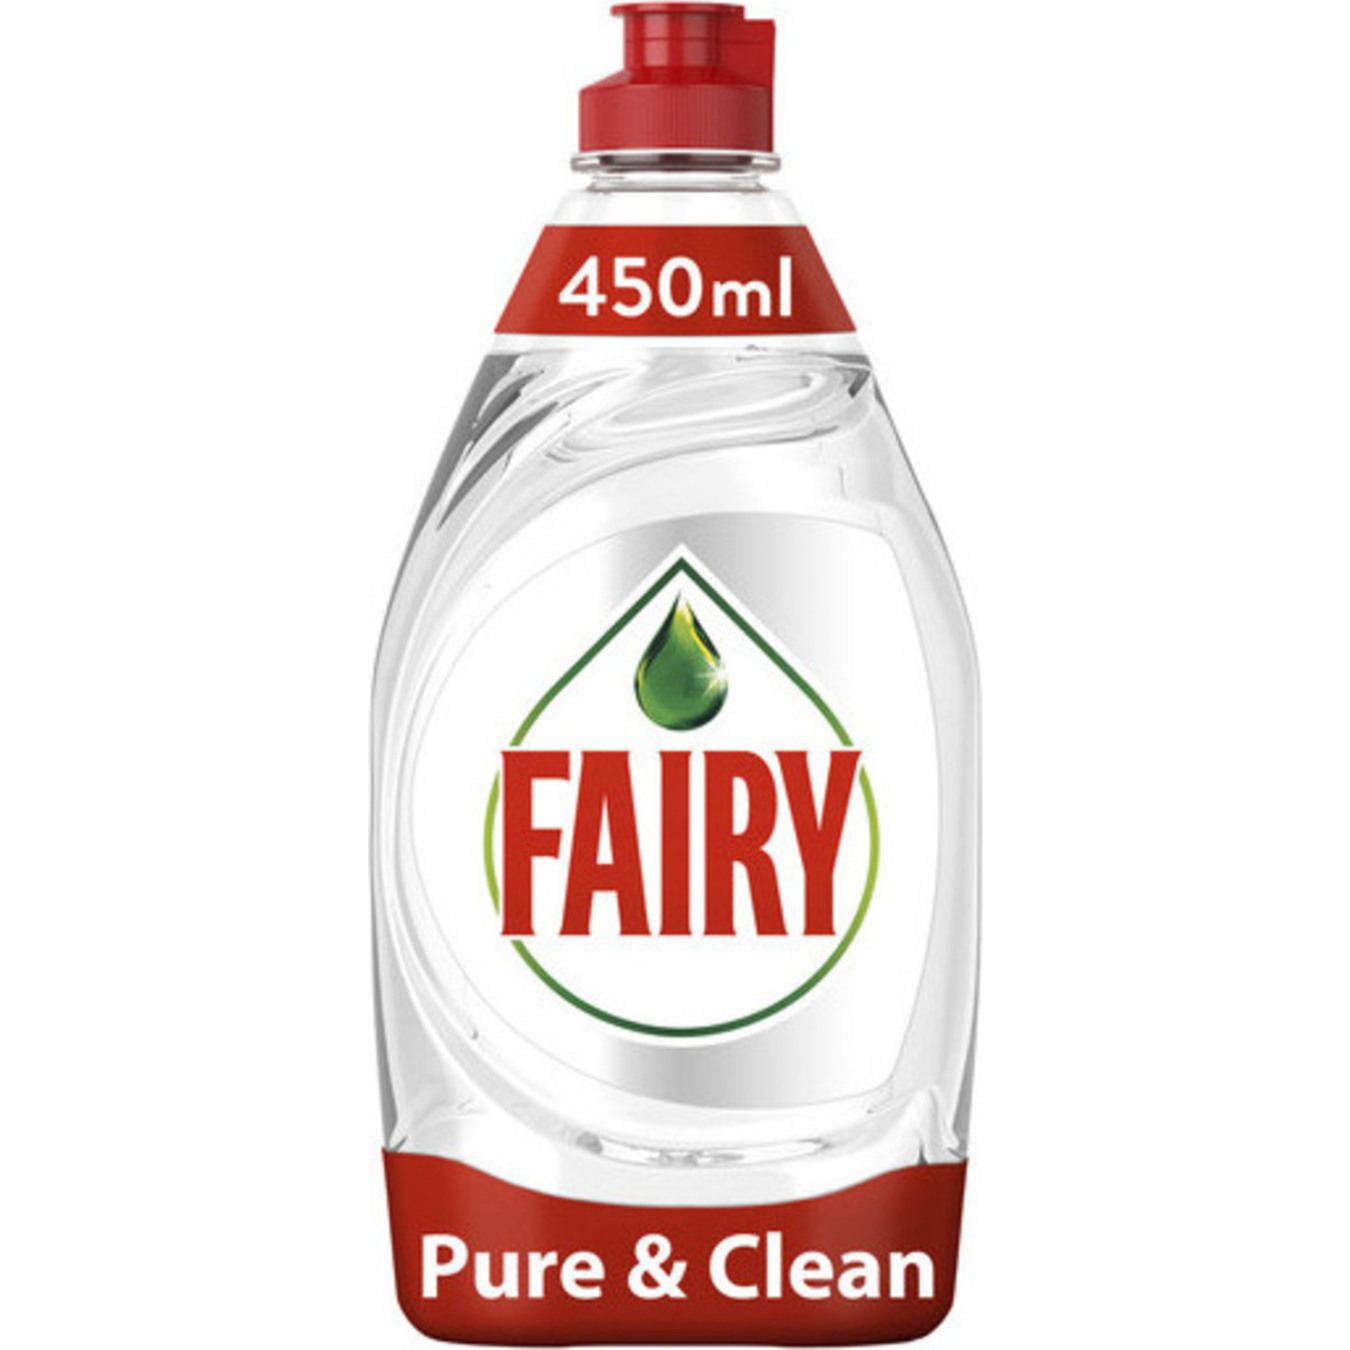 Dishwashing liquid Fairy Pure & Clean 450ml